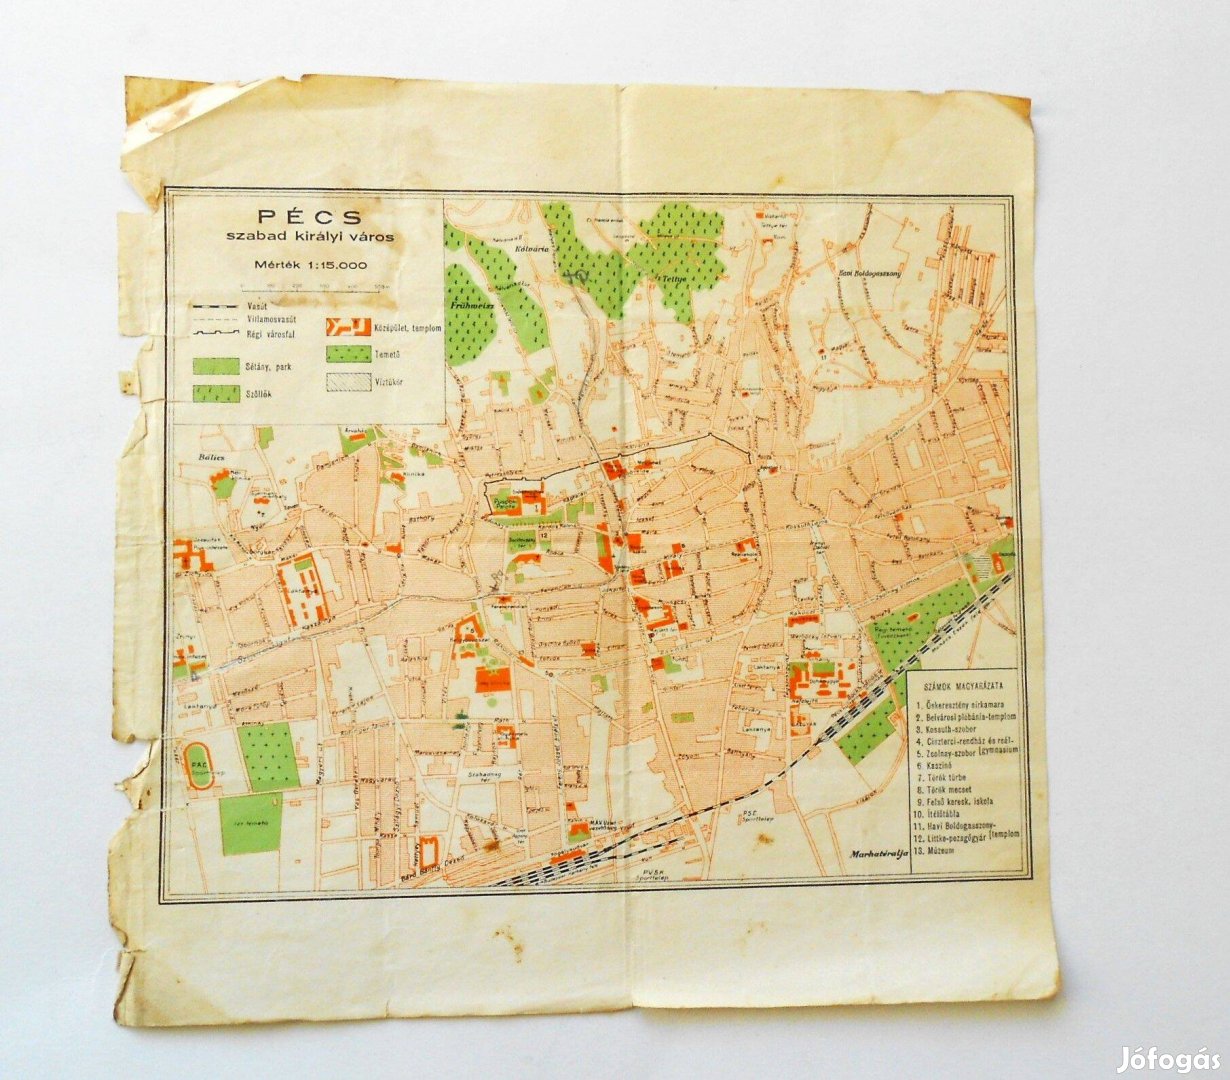 Pécs szabad királyi város régi térkép 1930-as évek